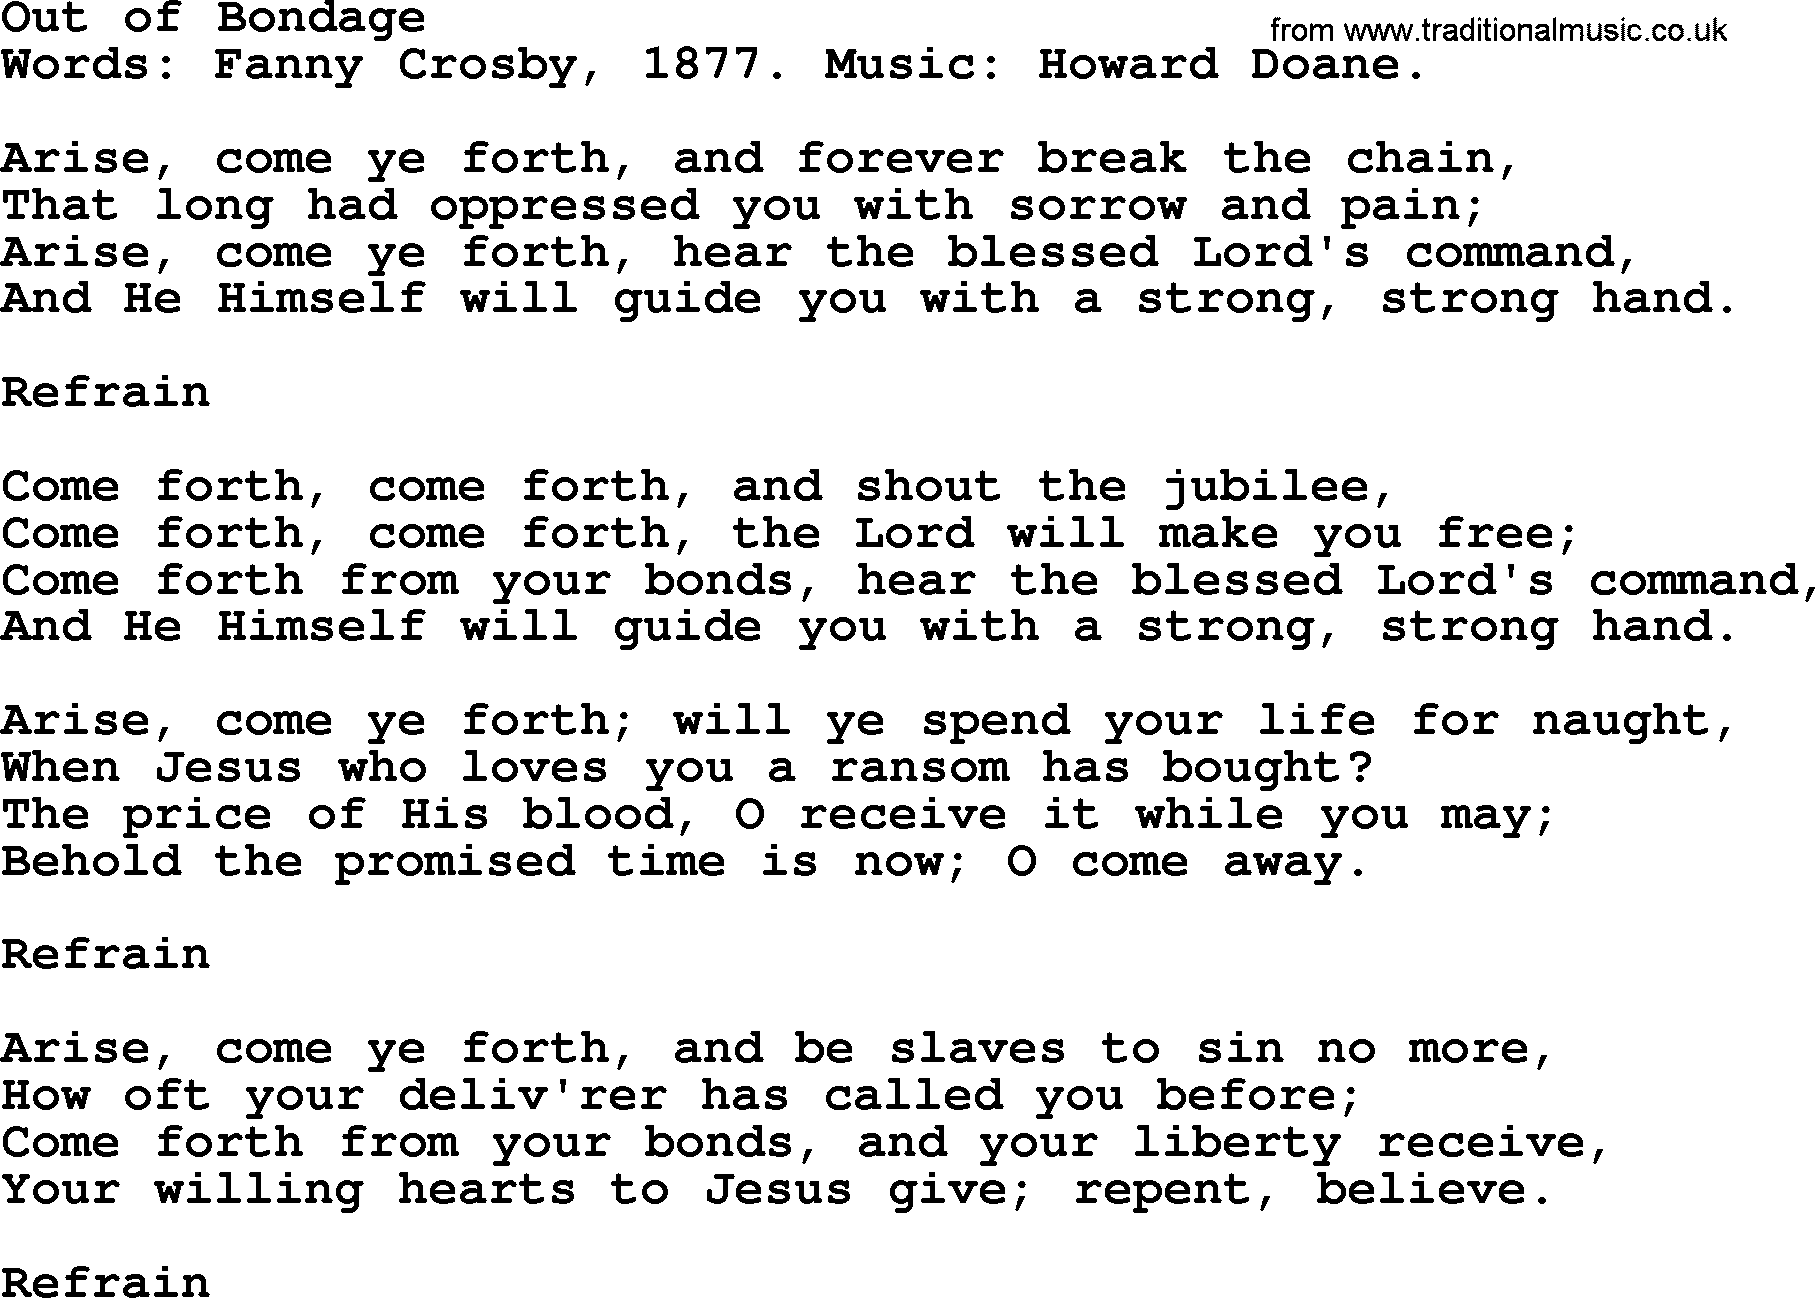 Fanny Crosby song: Out Of Bondage, lyrics